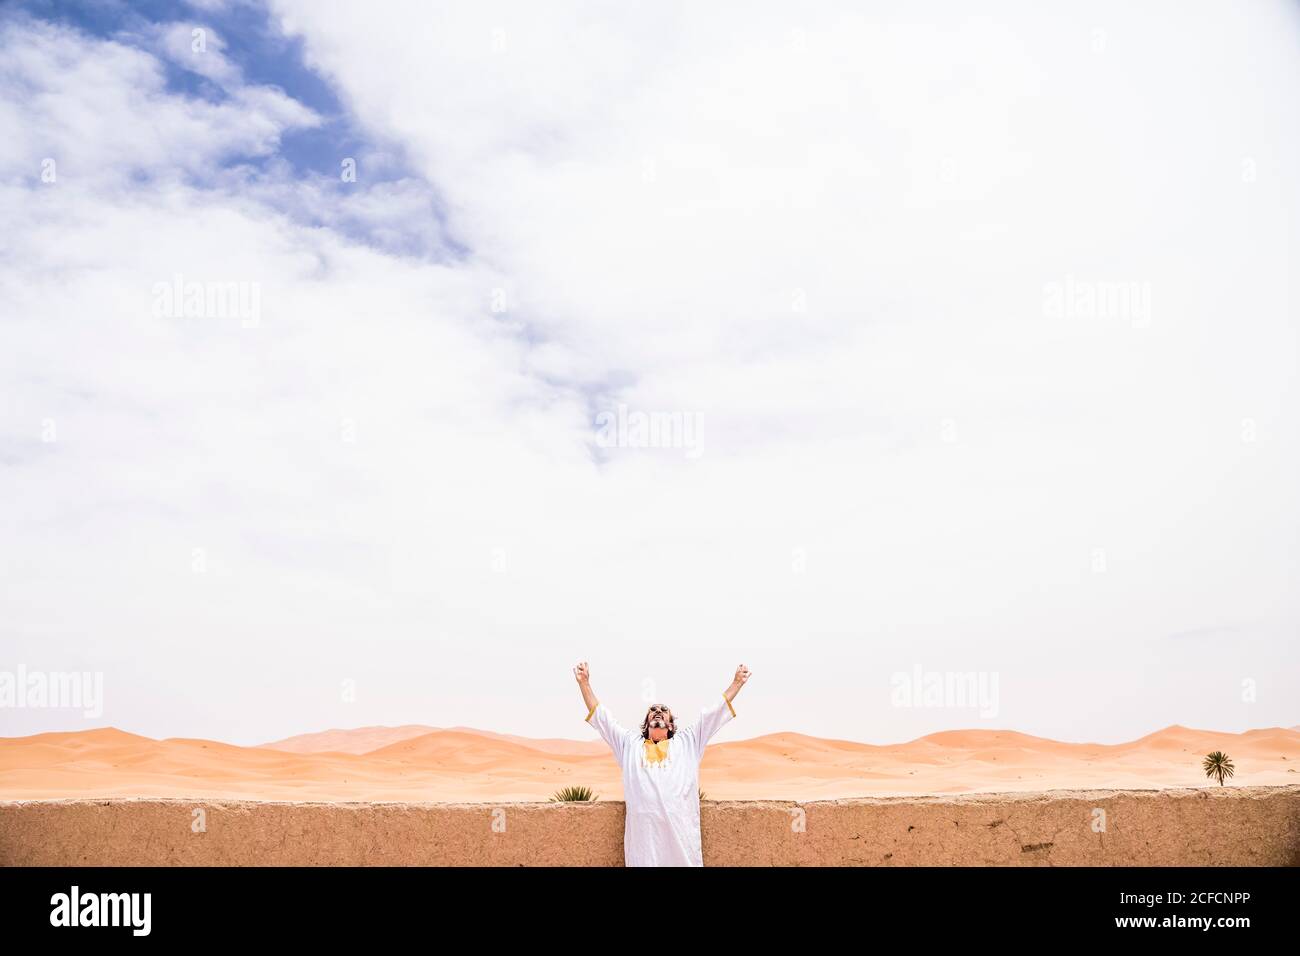 Euphorischer erwachsener Mann, der mit ausgestreckten Armen am Steinzaun auf der Terrasse gegen endlose Wüste, Marokko, den Himmel anschaut Stockfoto